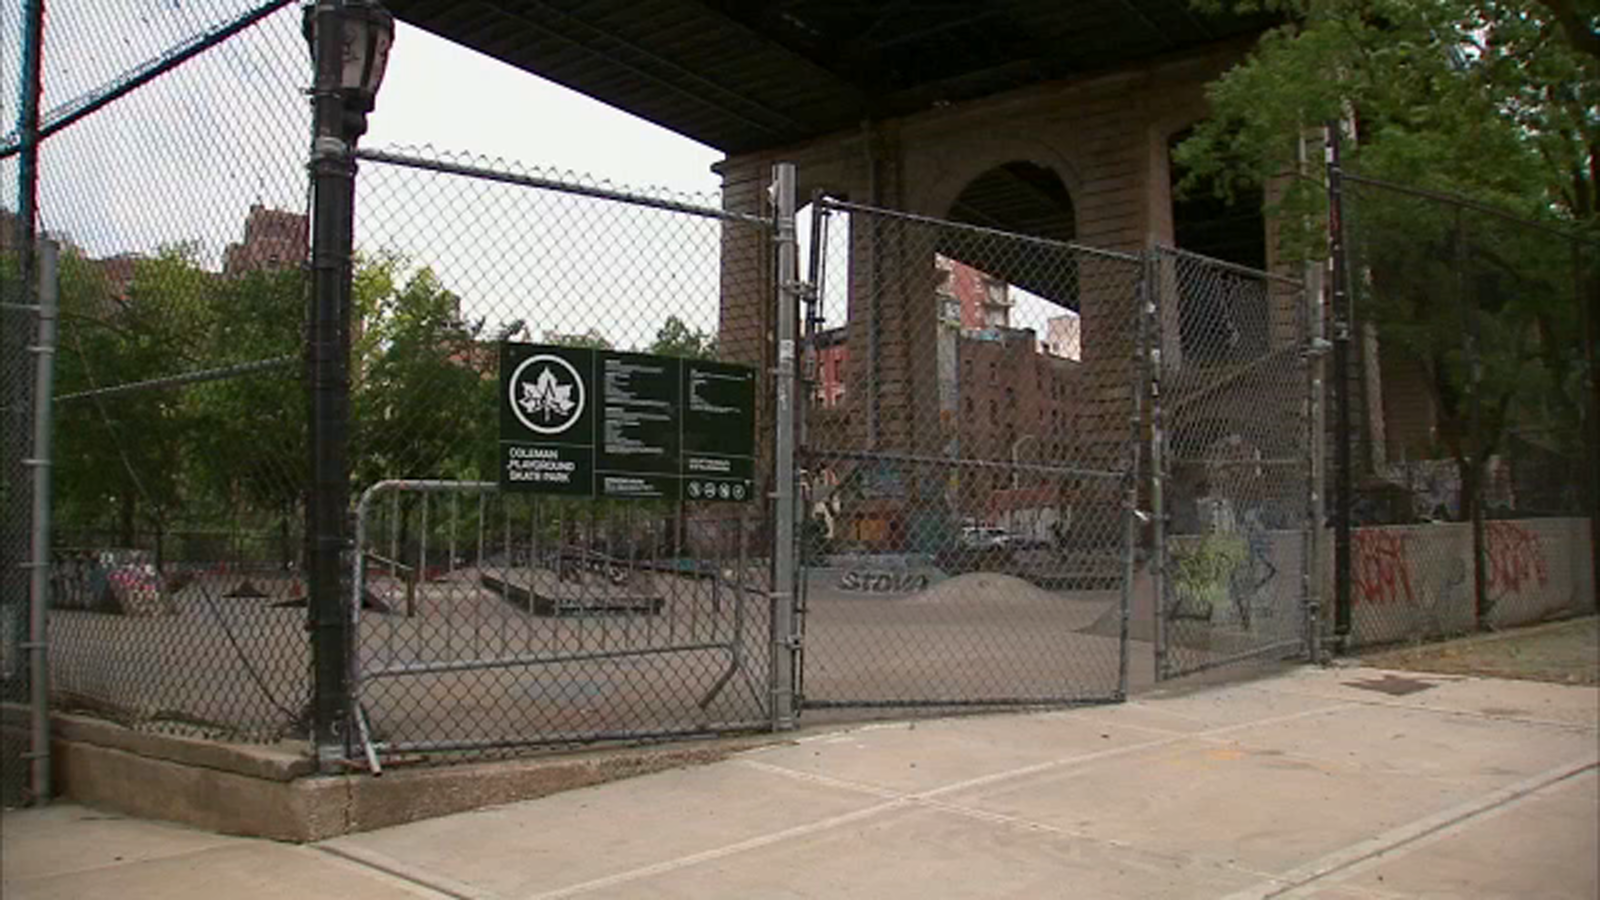 Man found fatally stabbed inside Lower East Side skate park